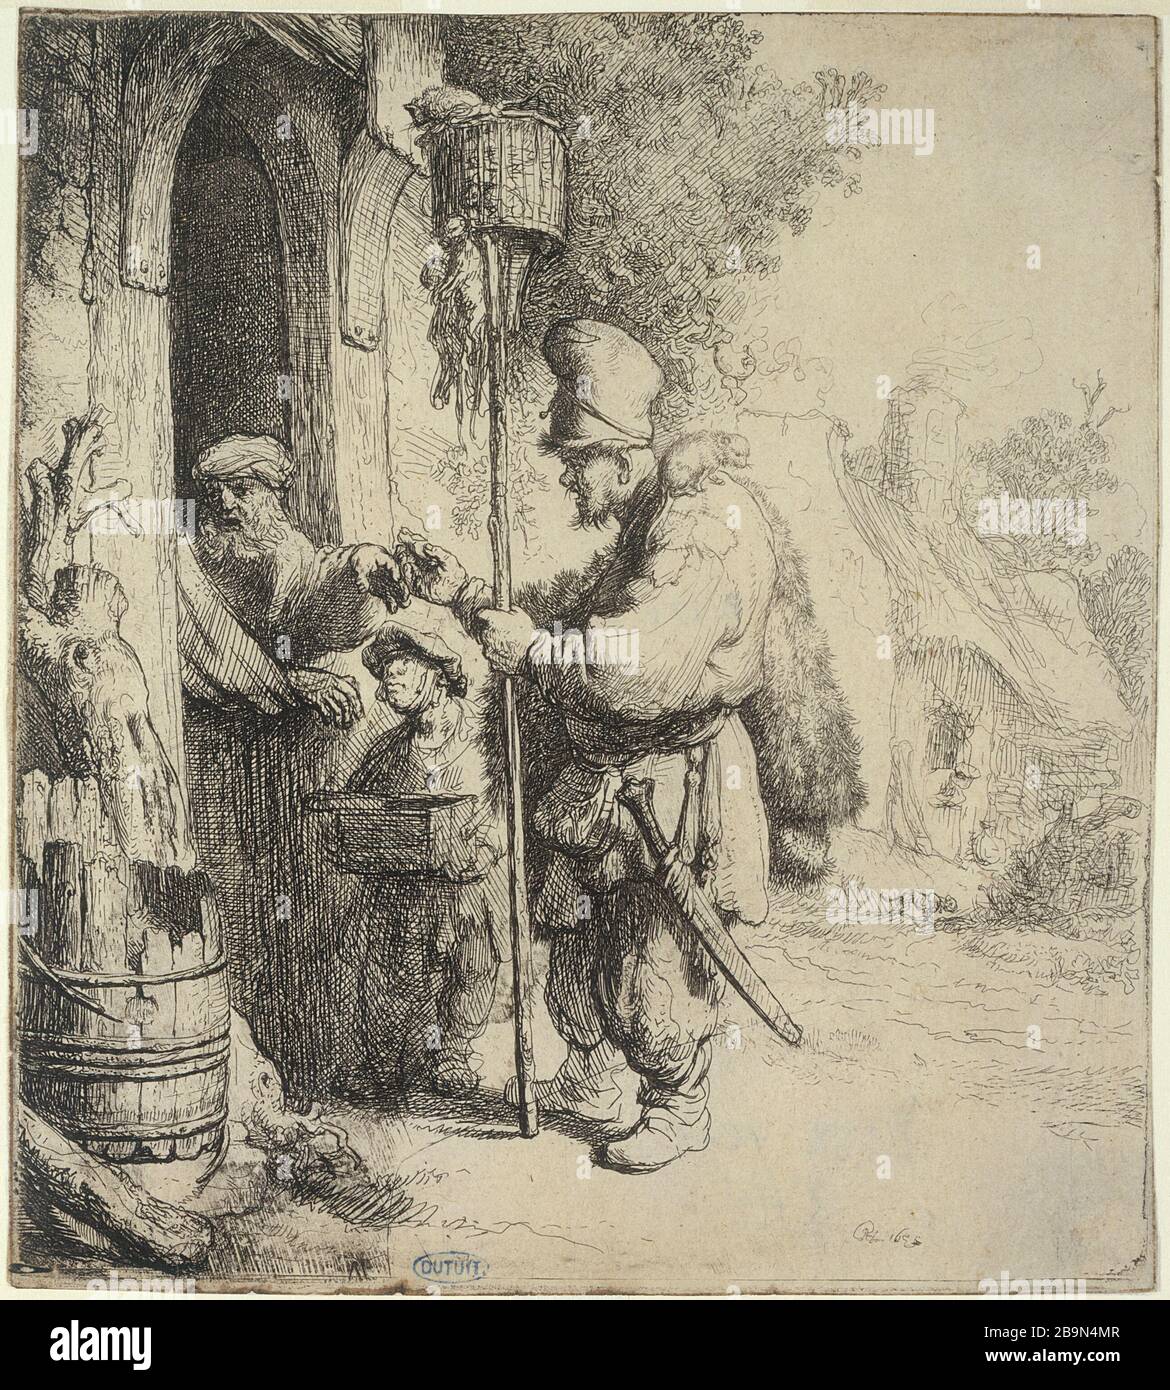 SELLER OF DEAD-RAT Harmensz van Rijn Rembrandt (1606-1669). 'Le vendeur de mort-aux-rats' (B 131 - 3ème état), 1632. Musée des Beaux-Arts de la Ville de Paris, Petit Palais. Stock Photo